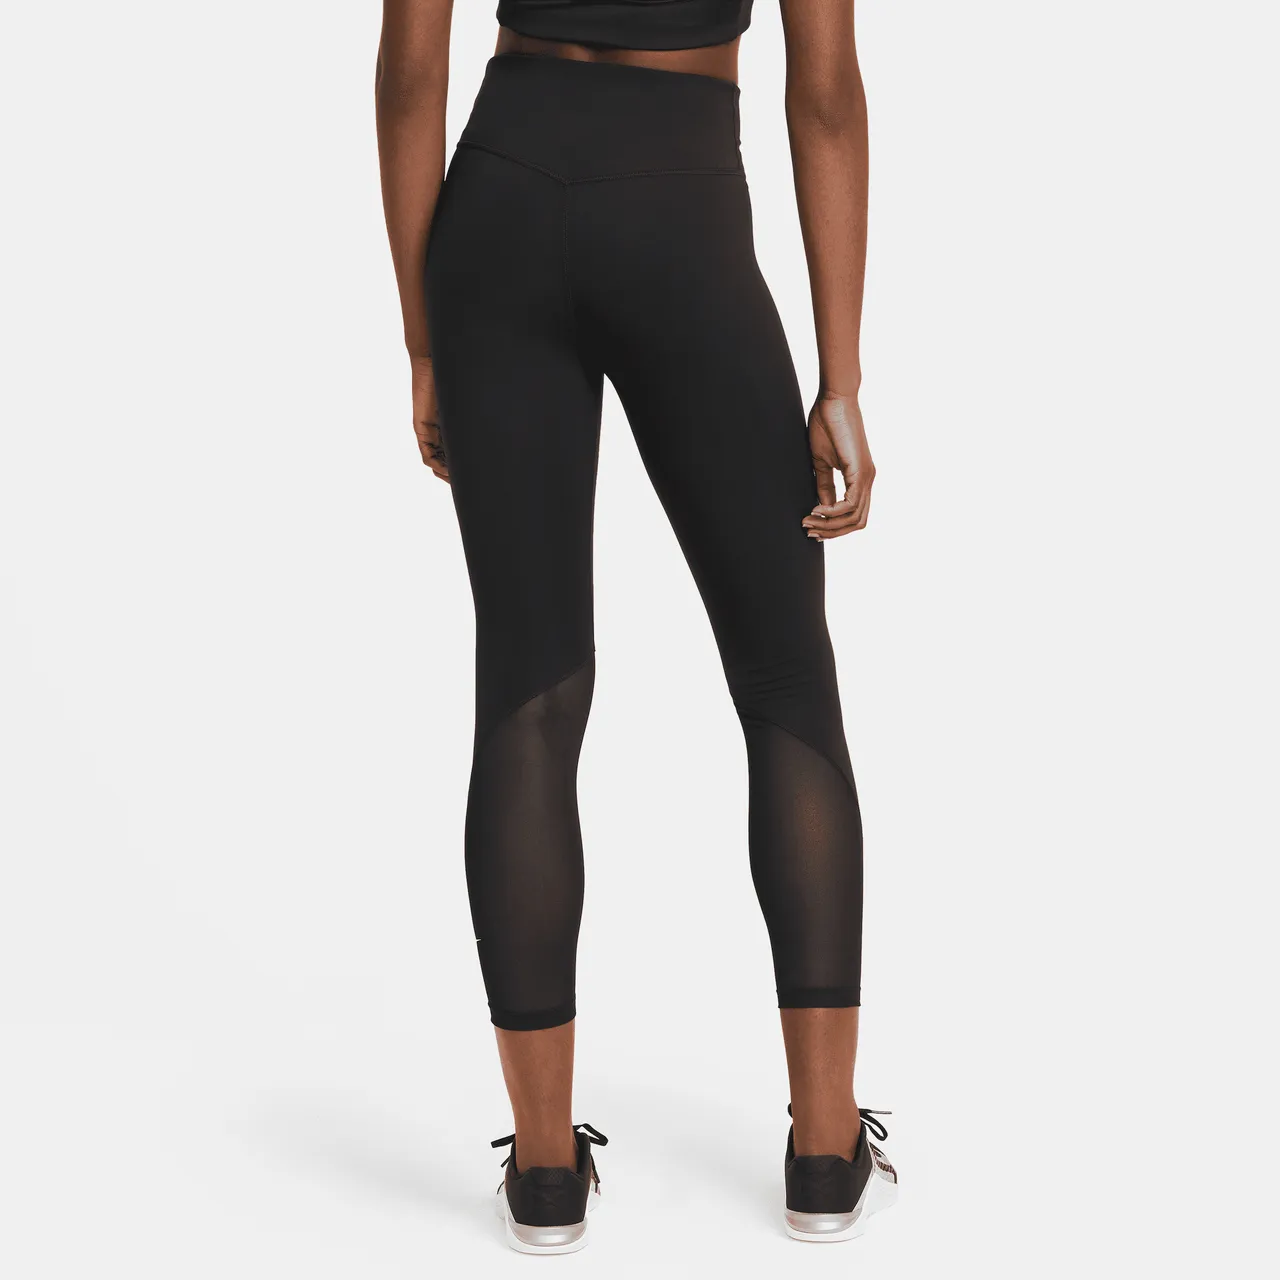 Nike One Women's Mid-Rise 7/8 Mesh-Panelled Leggings - Black - Polyester